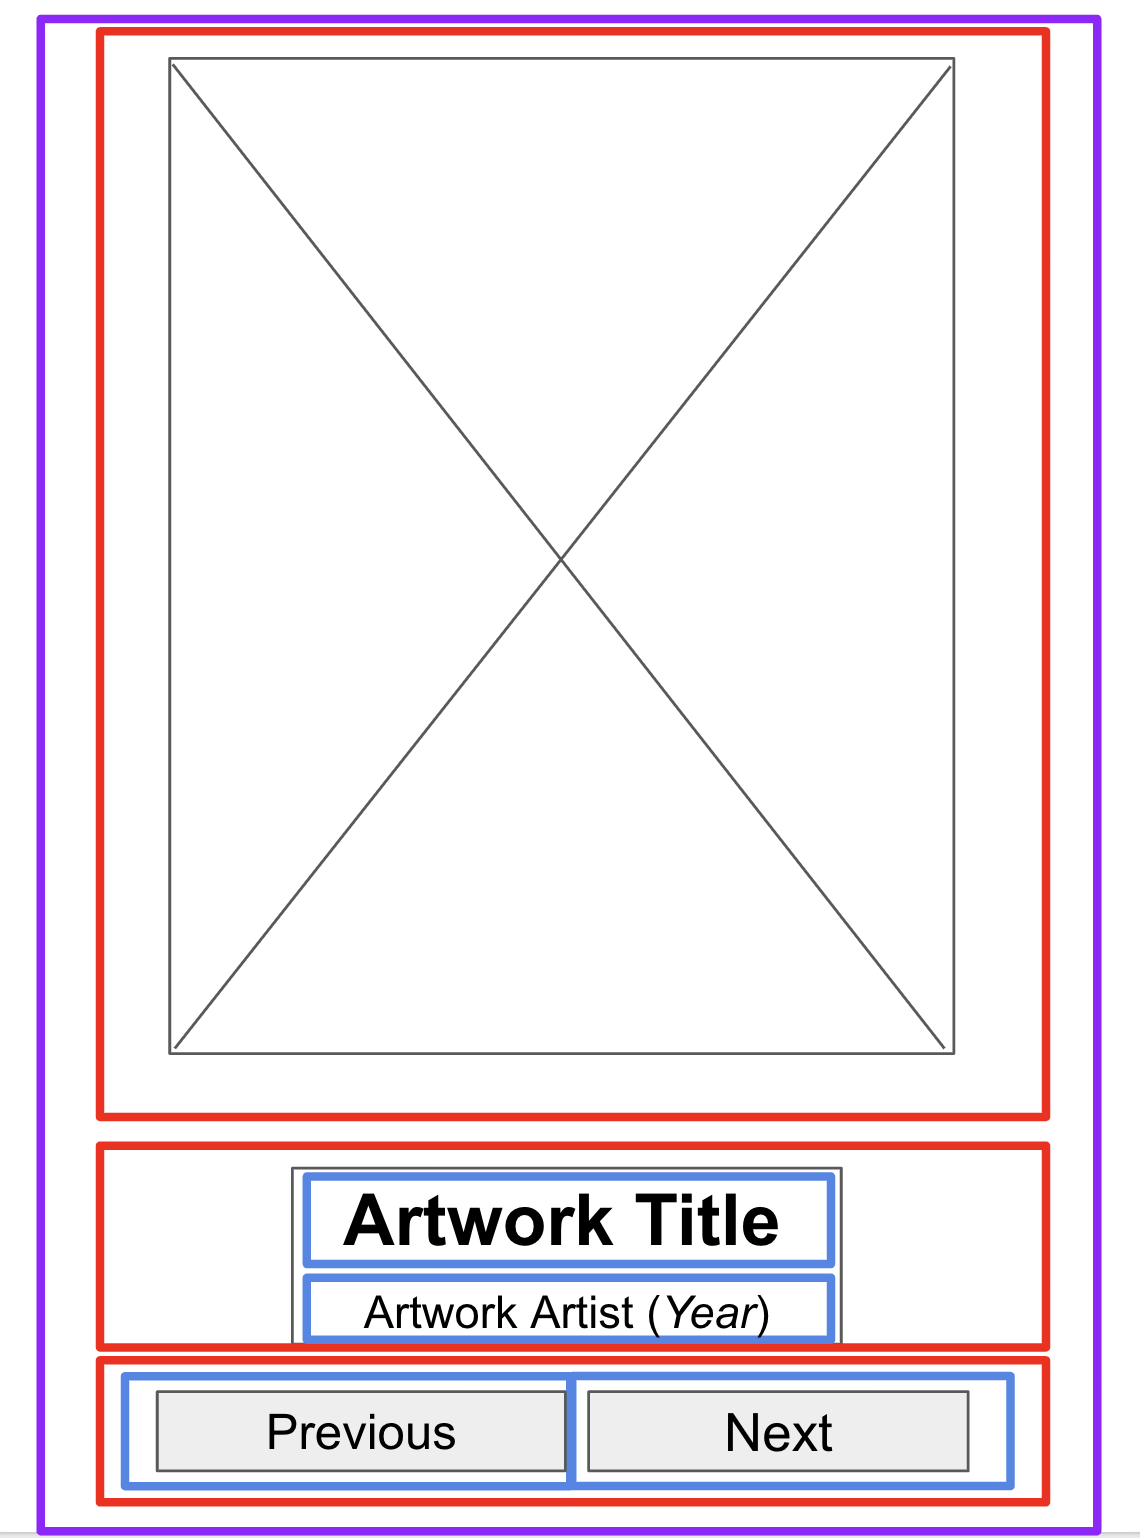 在低保真原型的各个区块中绘制的更小范围的边界（用于分隔文本和按钮）。